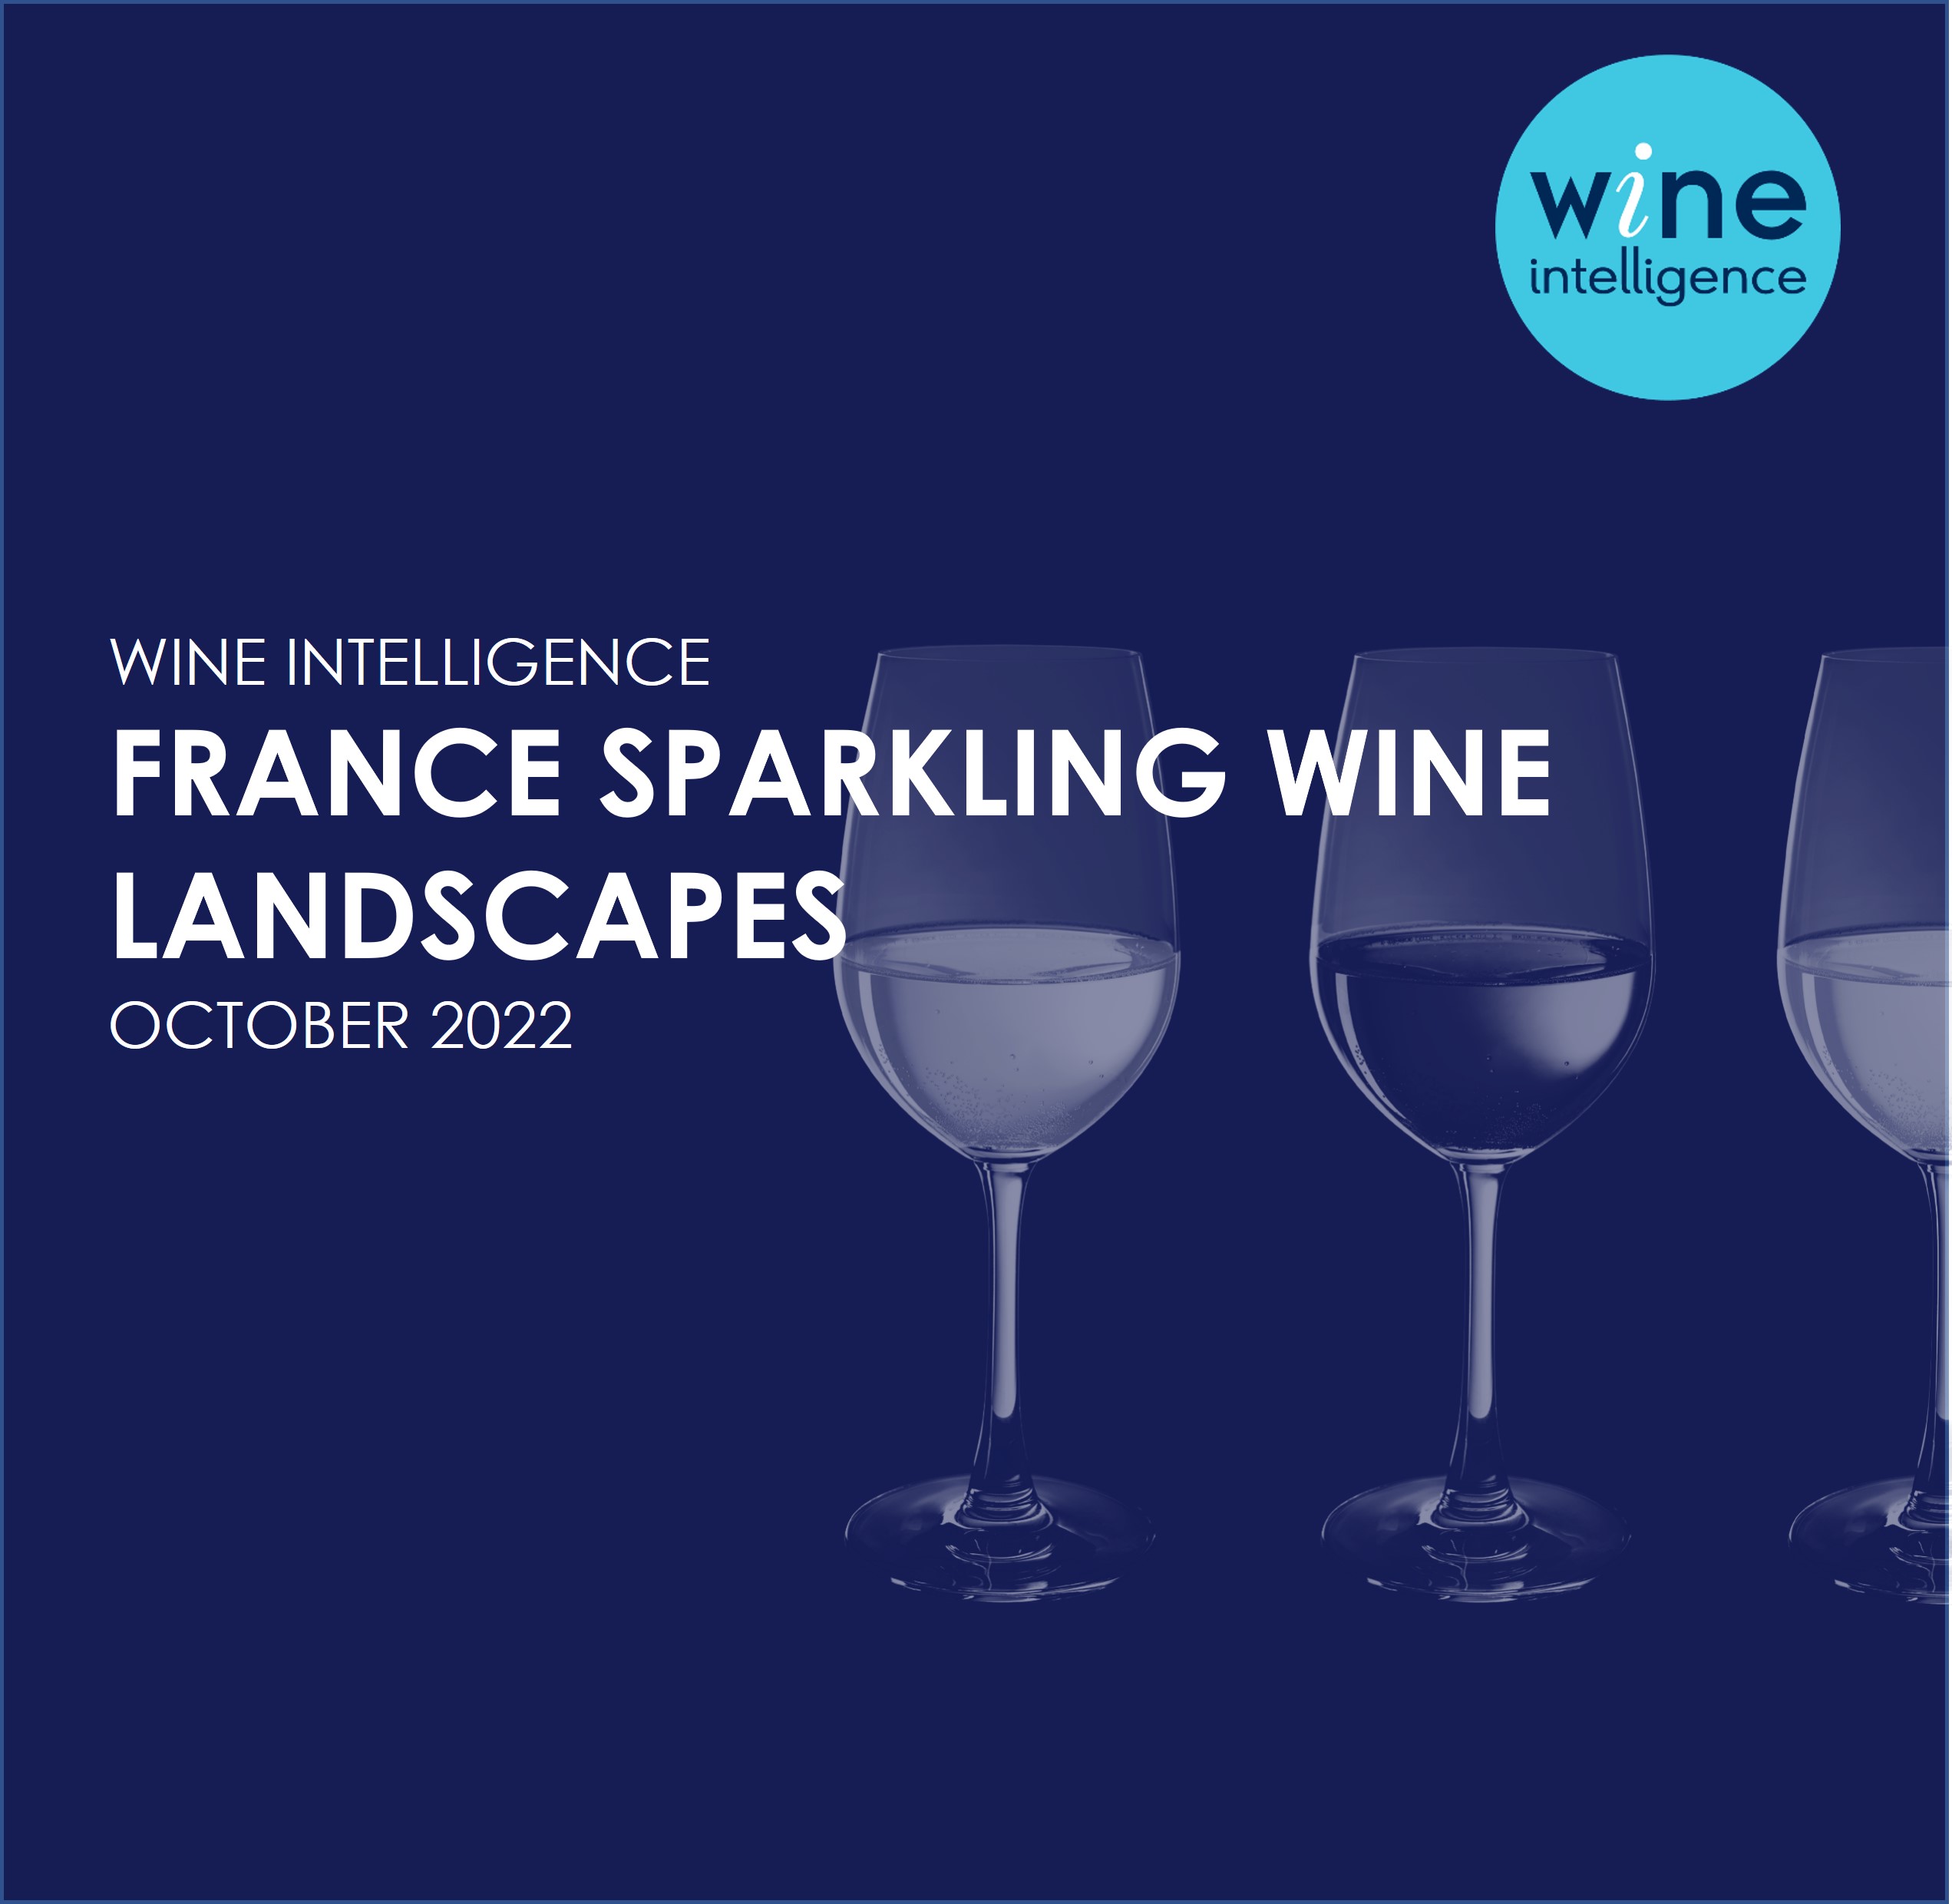 France sparkling wine landscapes 2022 - Home